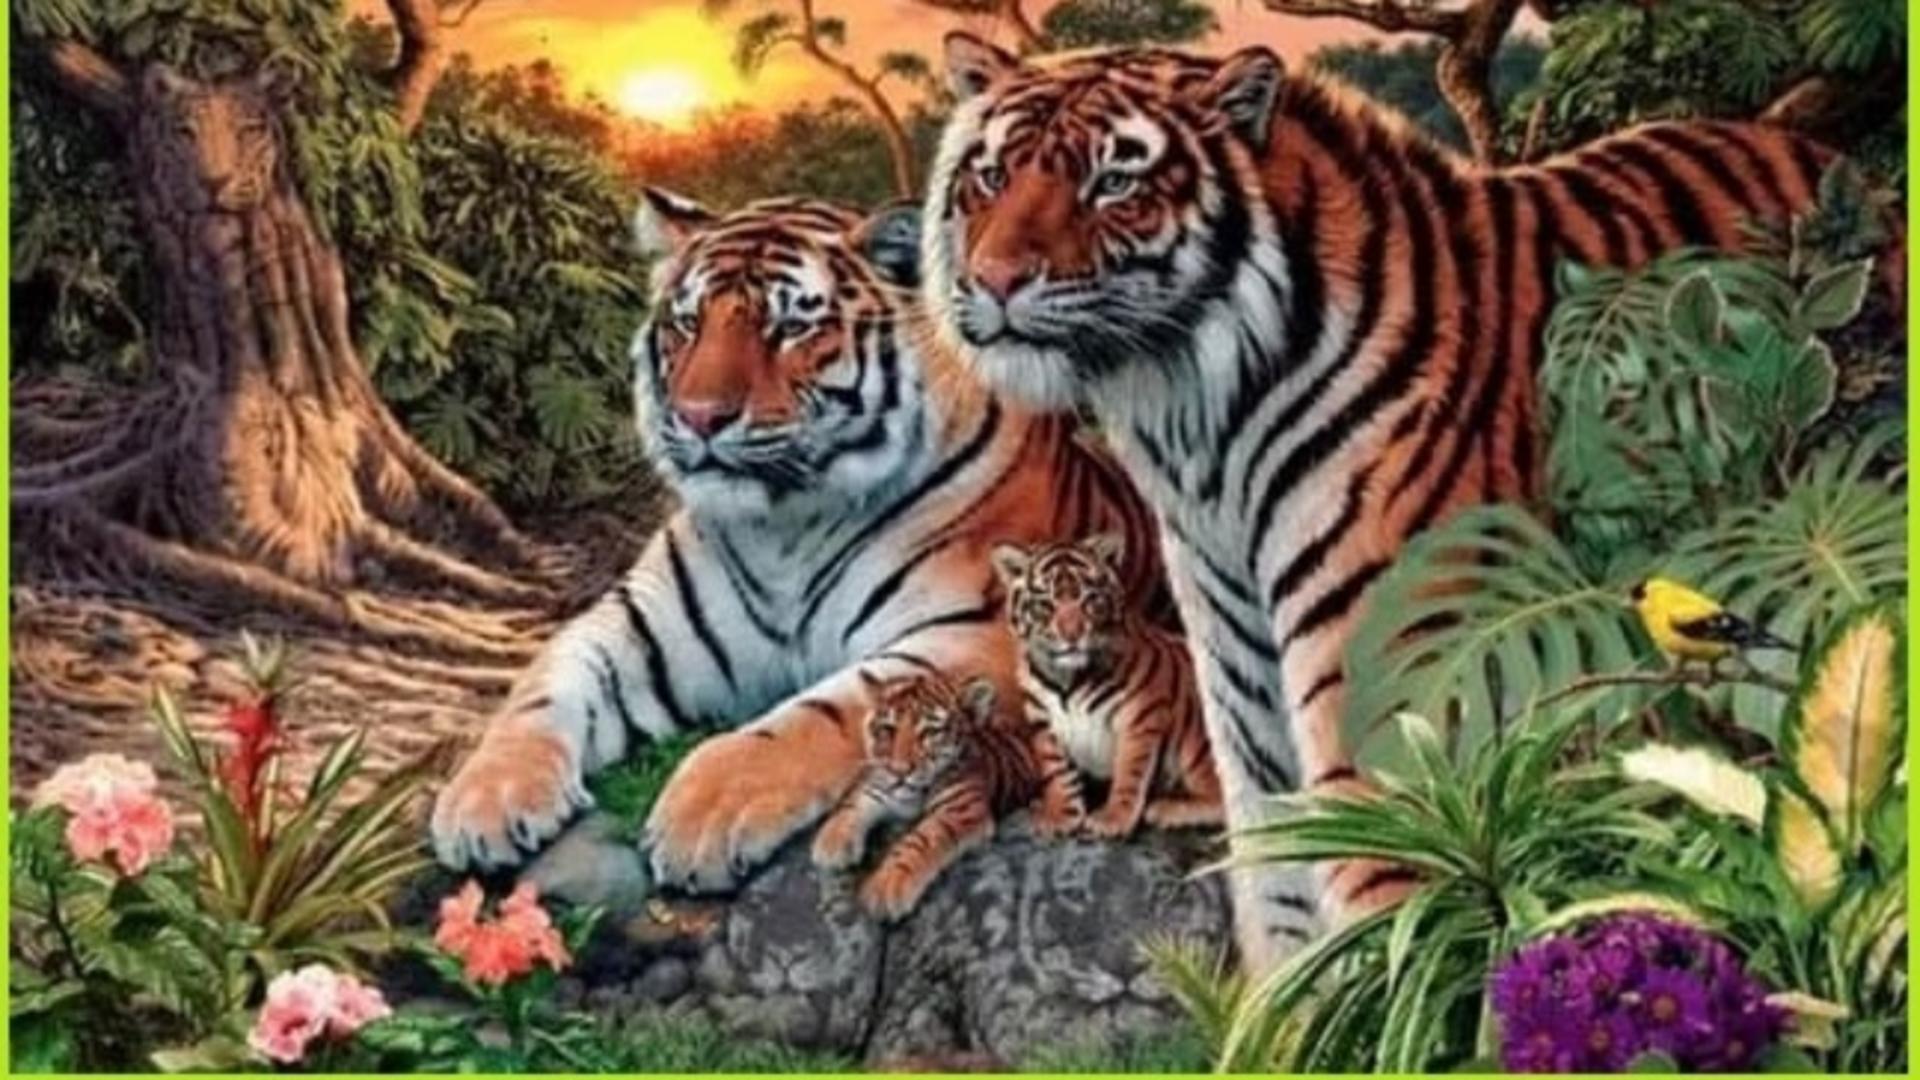 Testul draconic care a pus pe jar internetul! Câți tigri vezi în imagine? Nimeni nu îi poate găsi pe toți